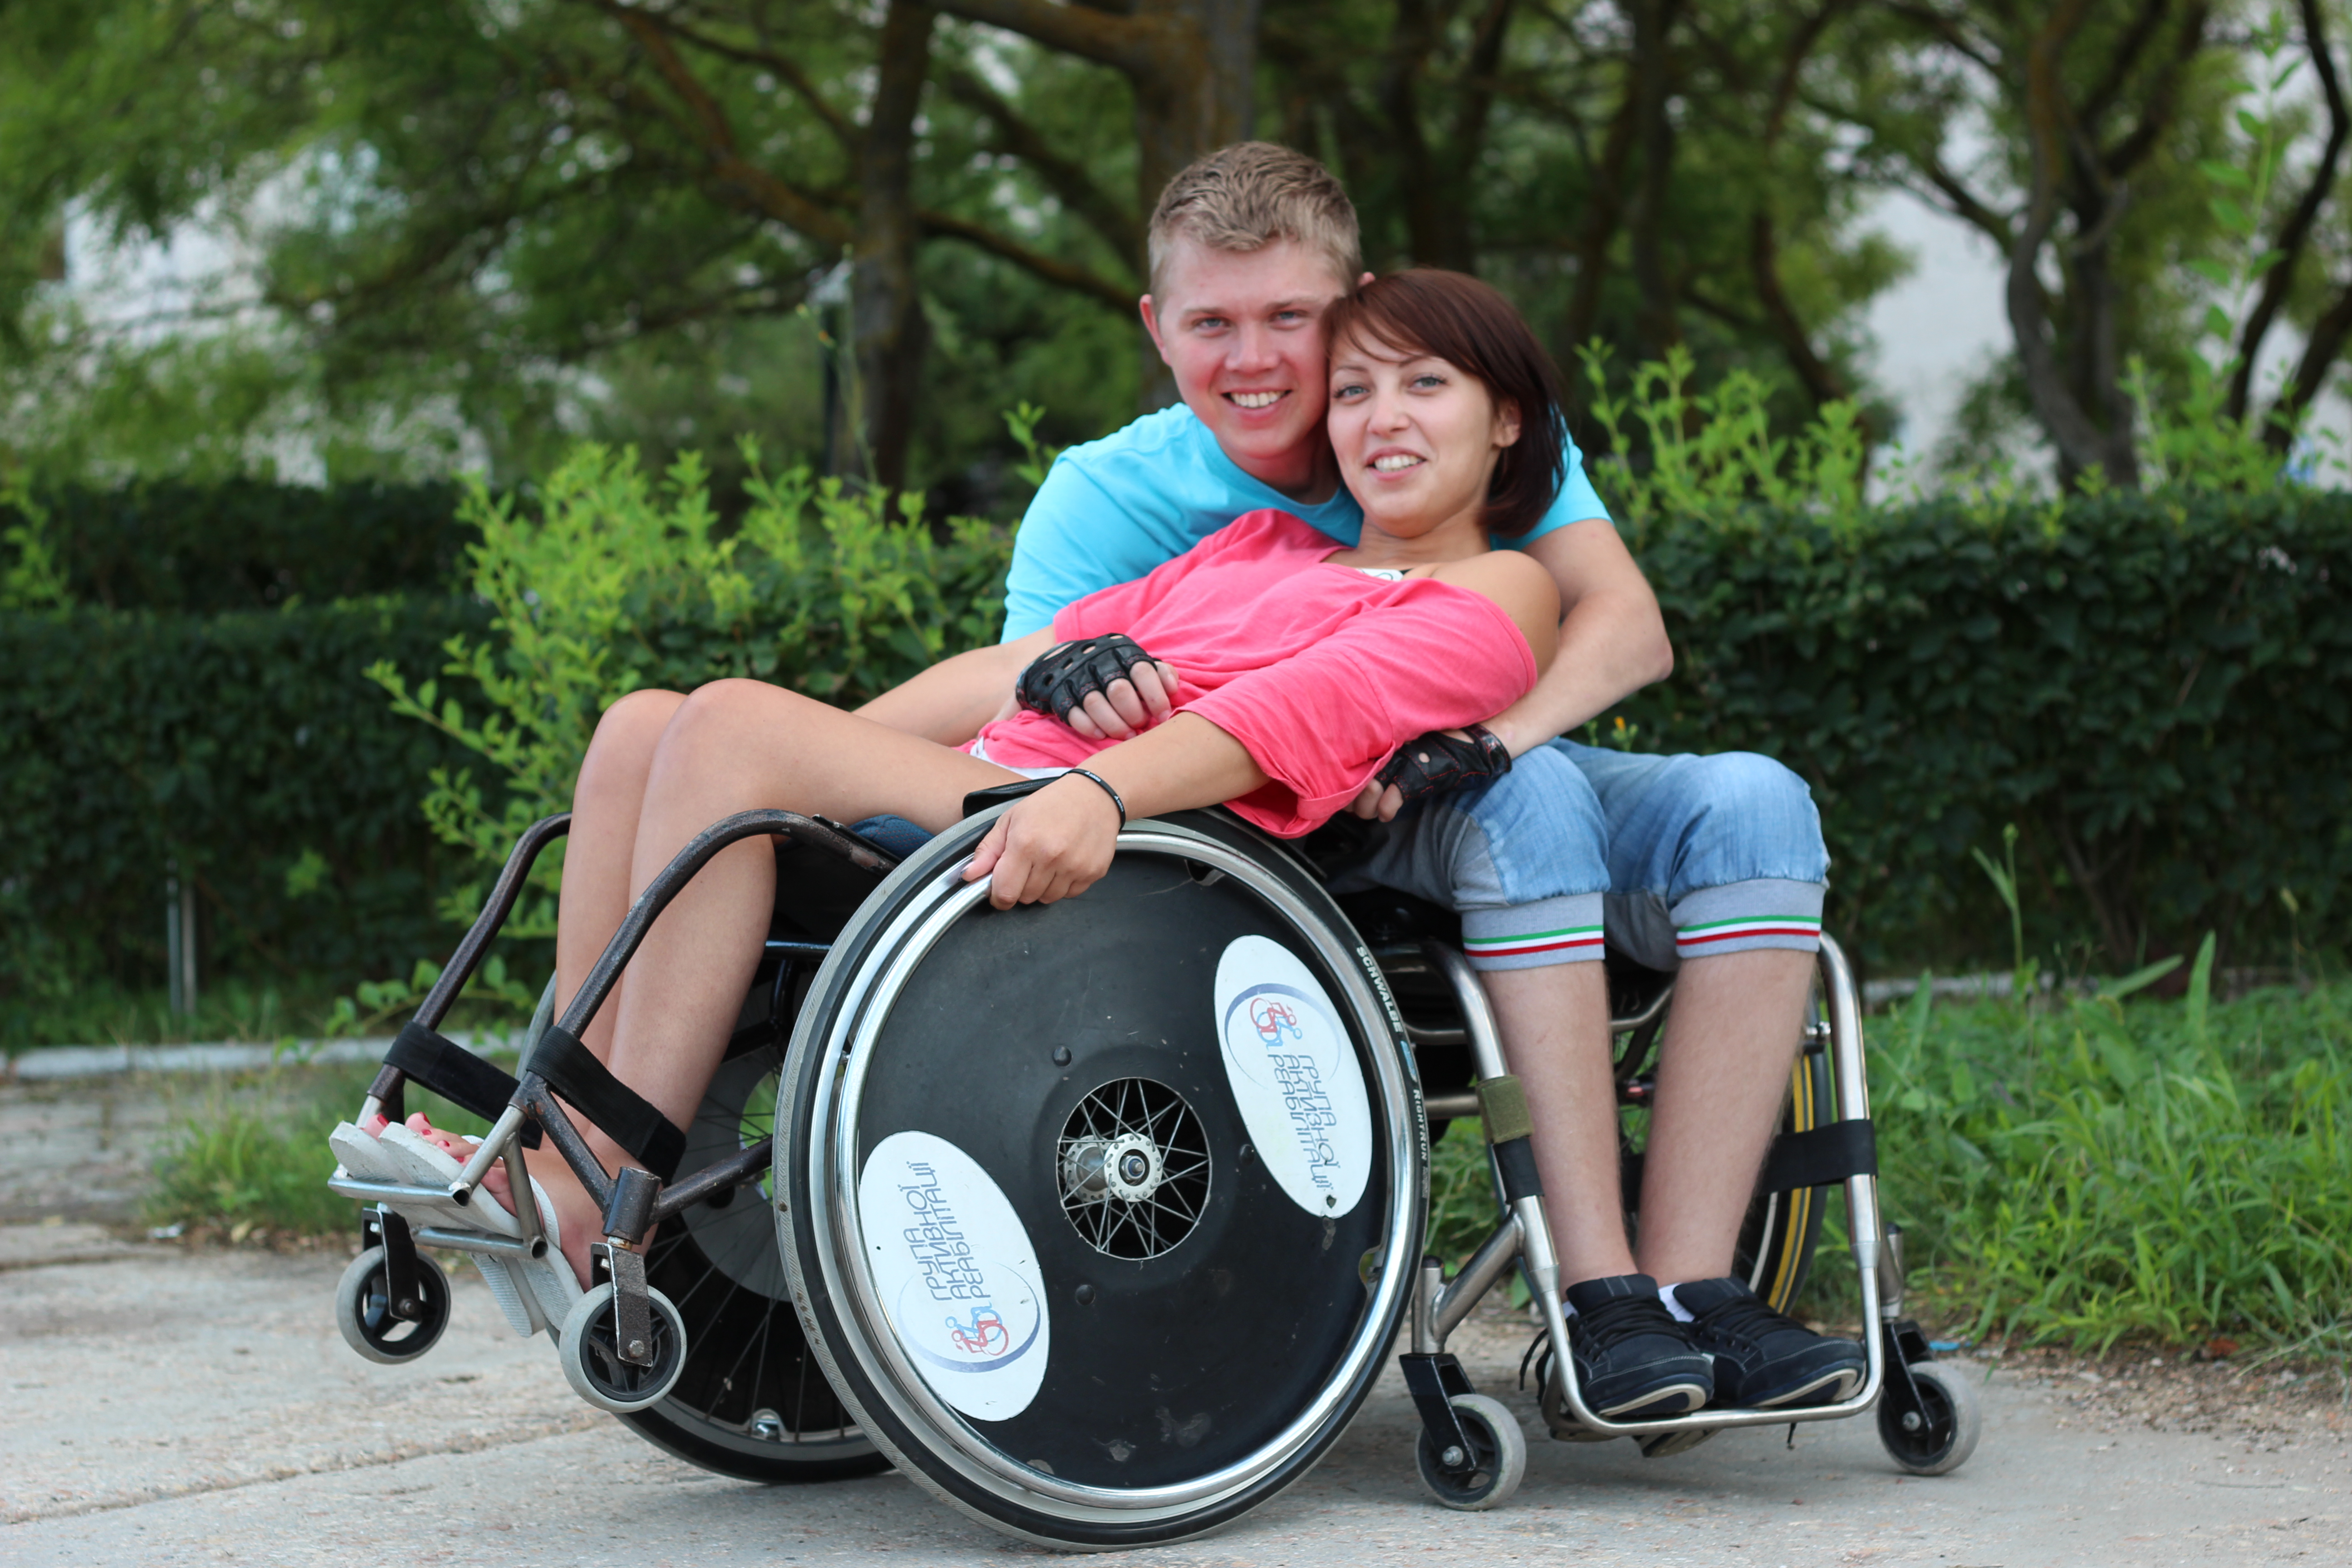 Взрослые инвалиды с детства. Люди с ограниченными возможностями. Челик в инвальдной коляске. Люди сограничеными возможностями. Инвалиды люди с ограниченными возможностями.